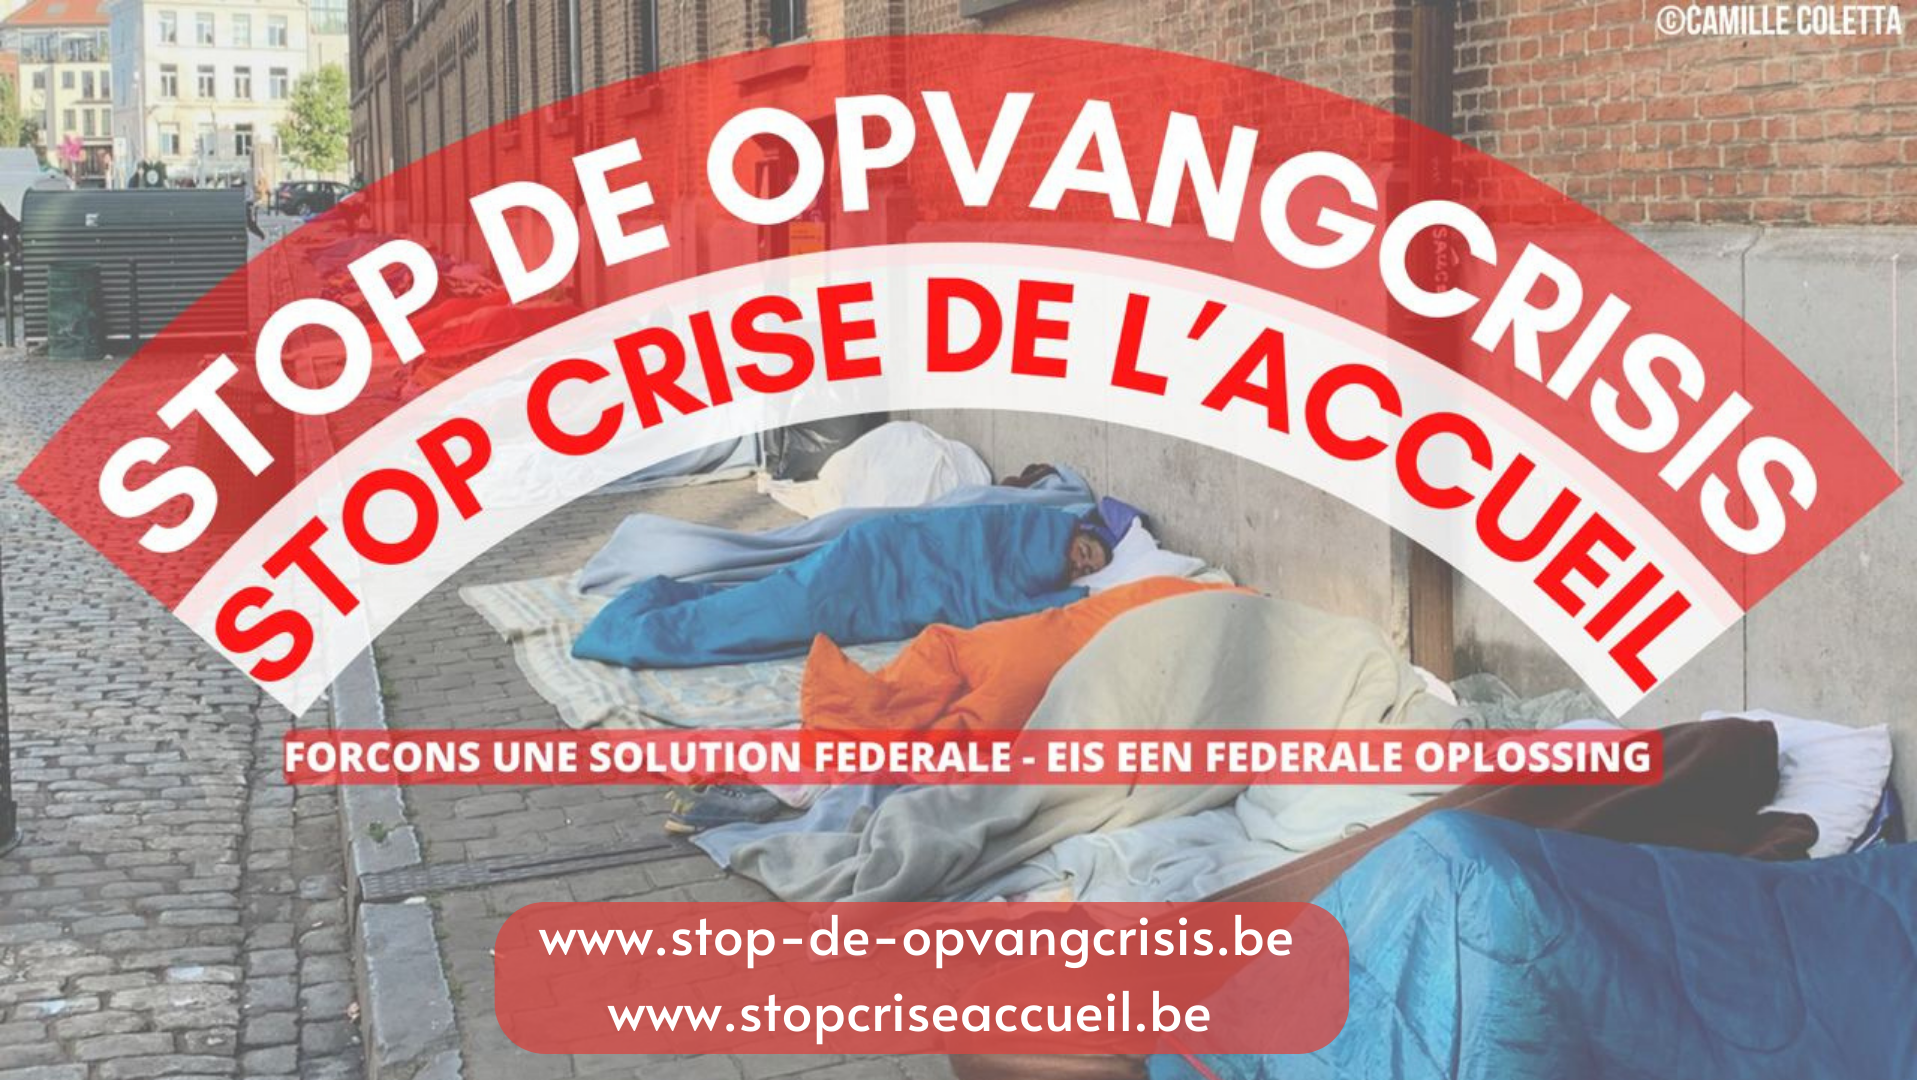 STOP DE OPVANGCRISIS / STOP CRISE DE L’ACCUEIL